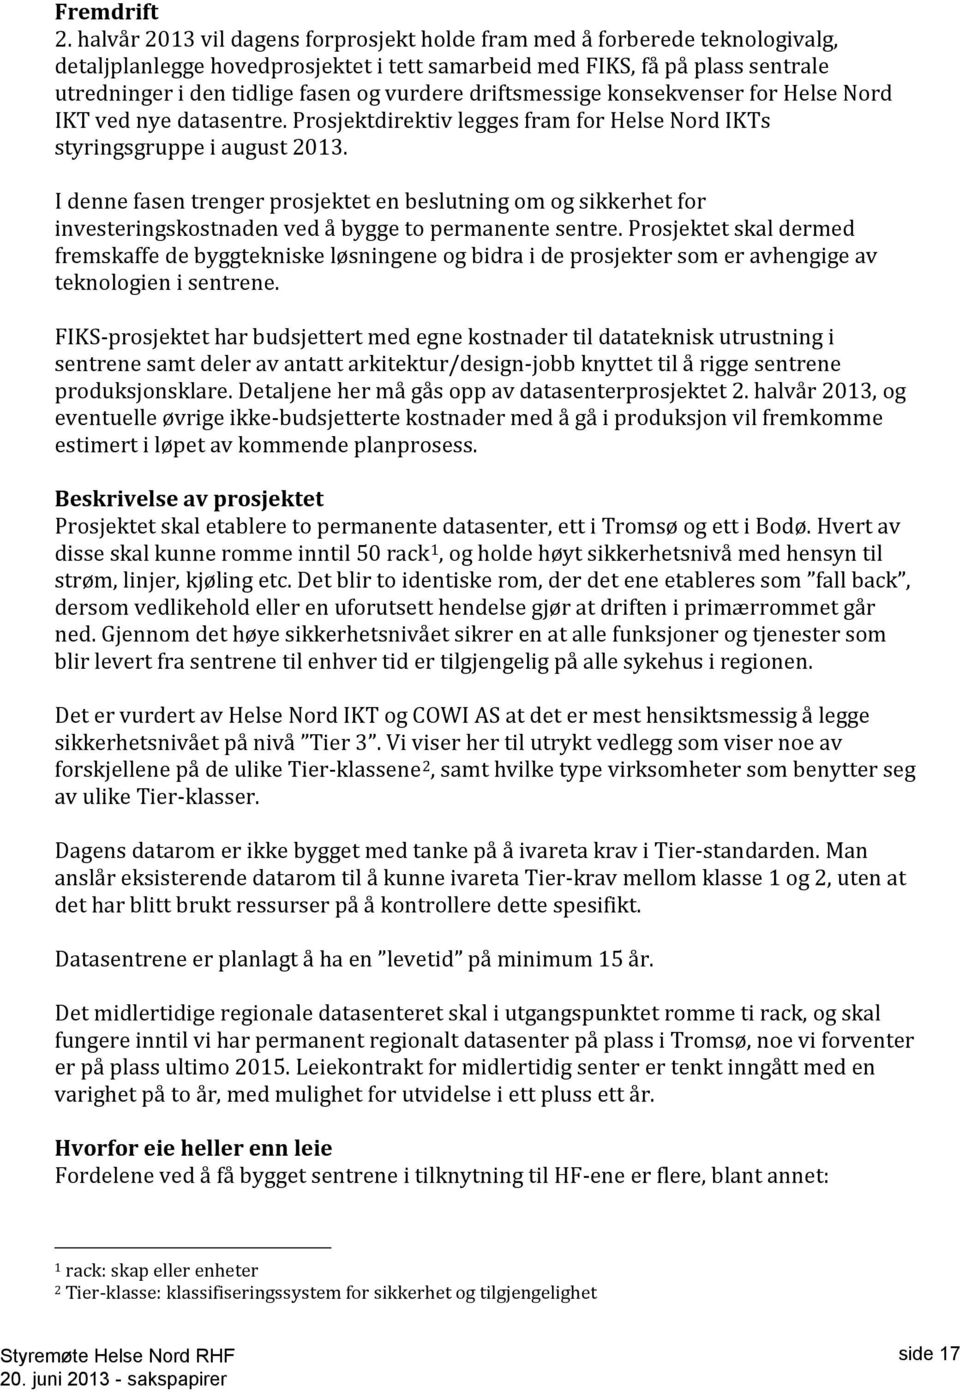 driftsmessige konsekvenser for Helse Nord IKT ved nye datasentre. Prosjektdirektiv legges fram for Helse Nord IKTs styringsgruppe i august 2013.